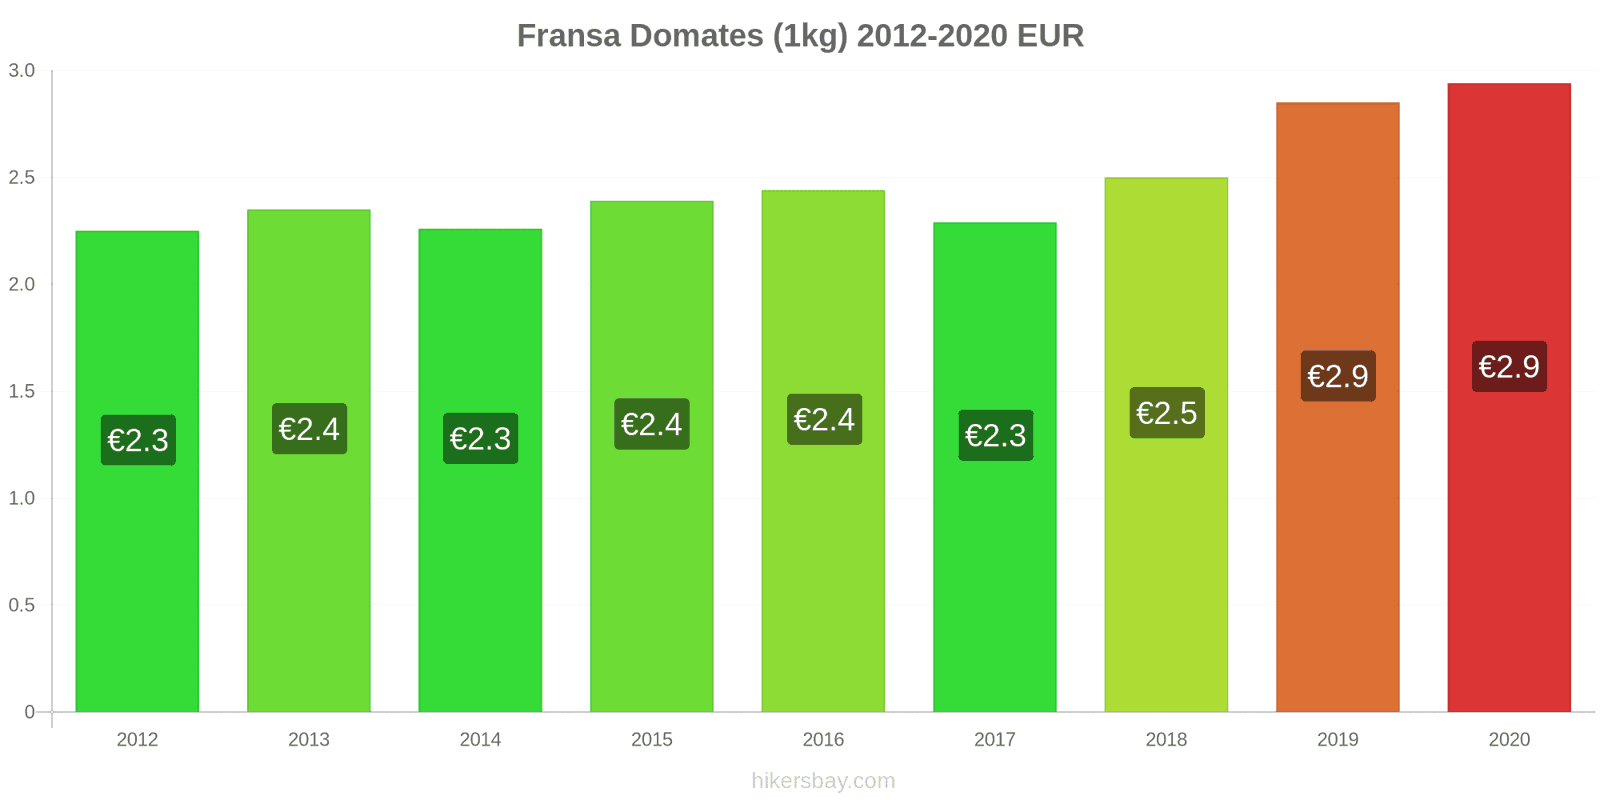 Fransa fiyat değişiklikleri Domates (1kg) hikersbay.com